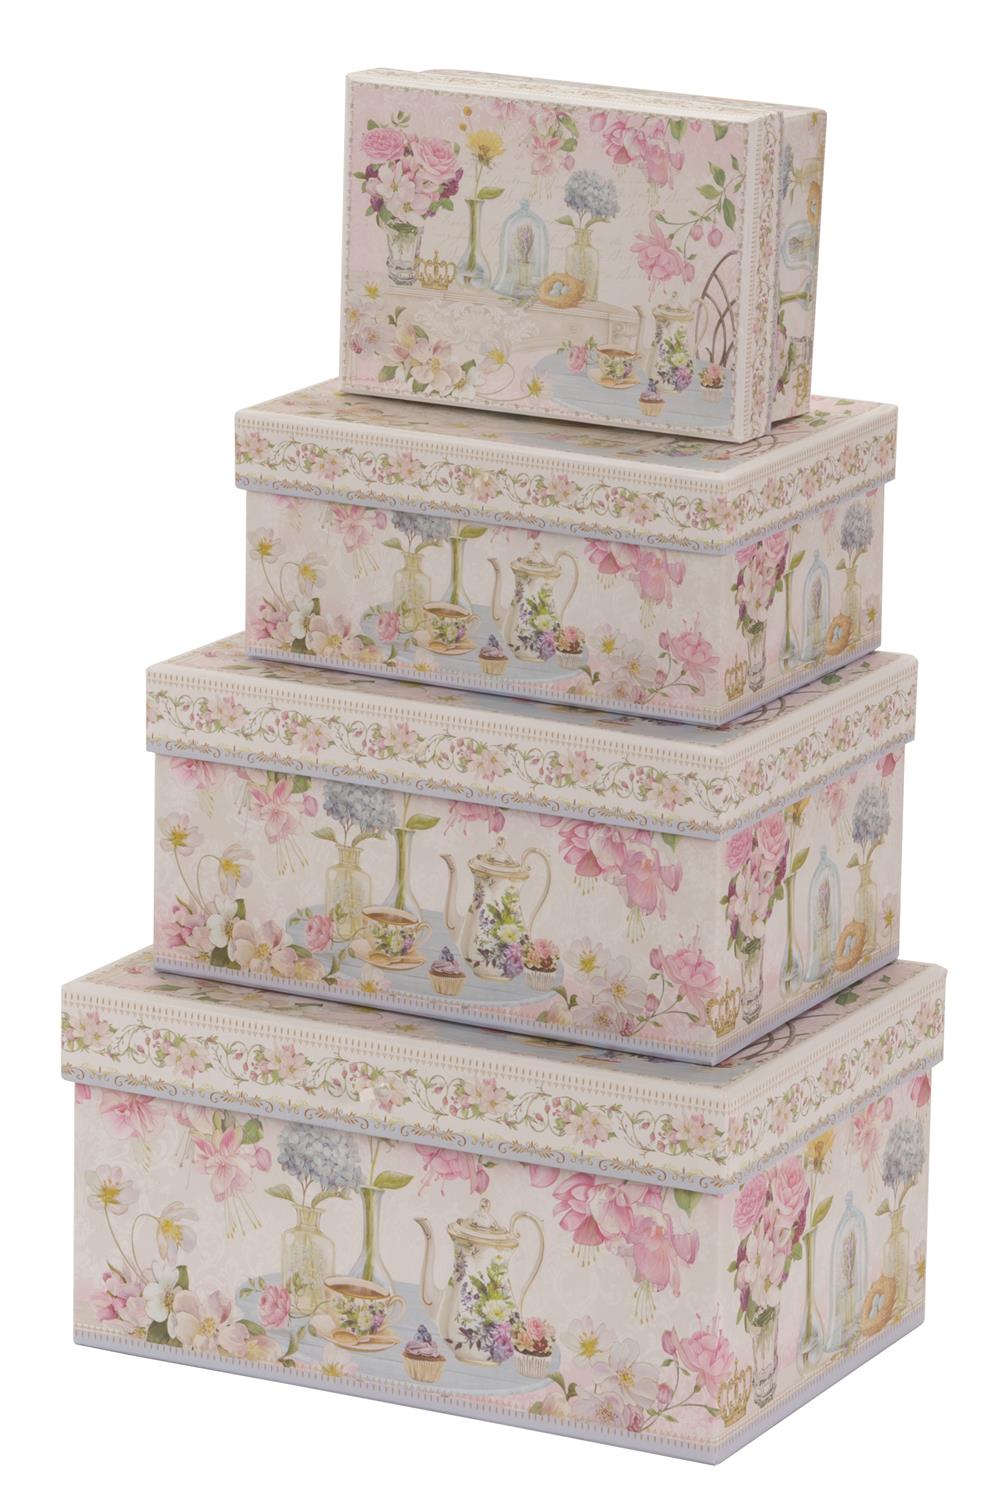 Pink floral design cardboard storage boxes